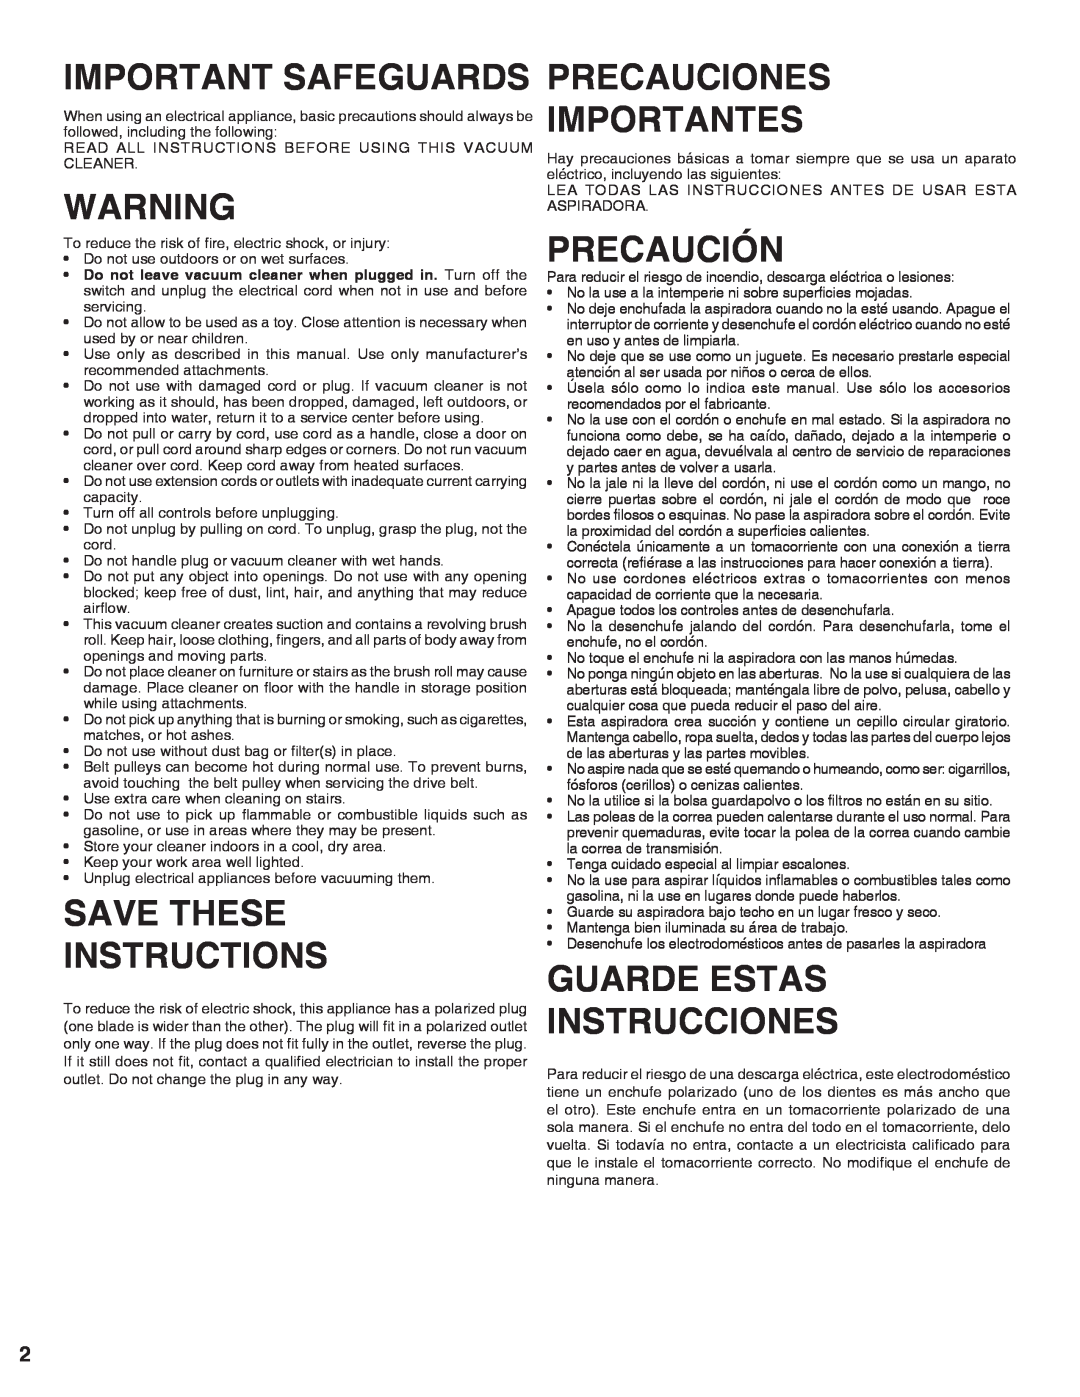 Sanitaire 9020 warranty Important Safeguards, Save These Instructions, Precauciones Importantes, Precaución 